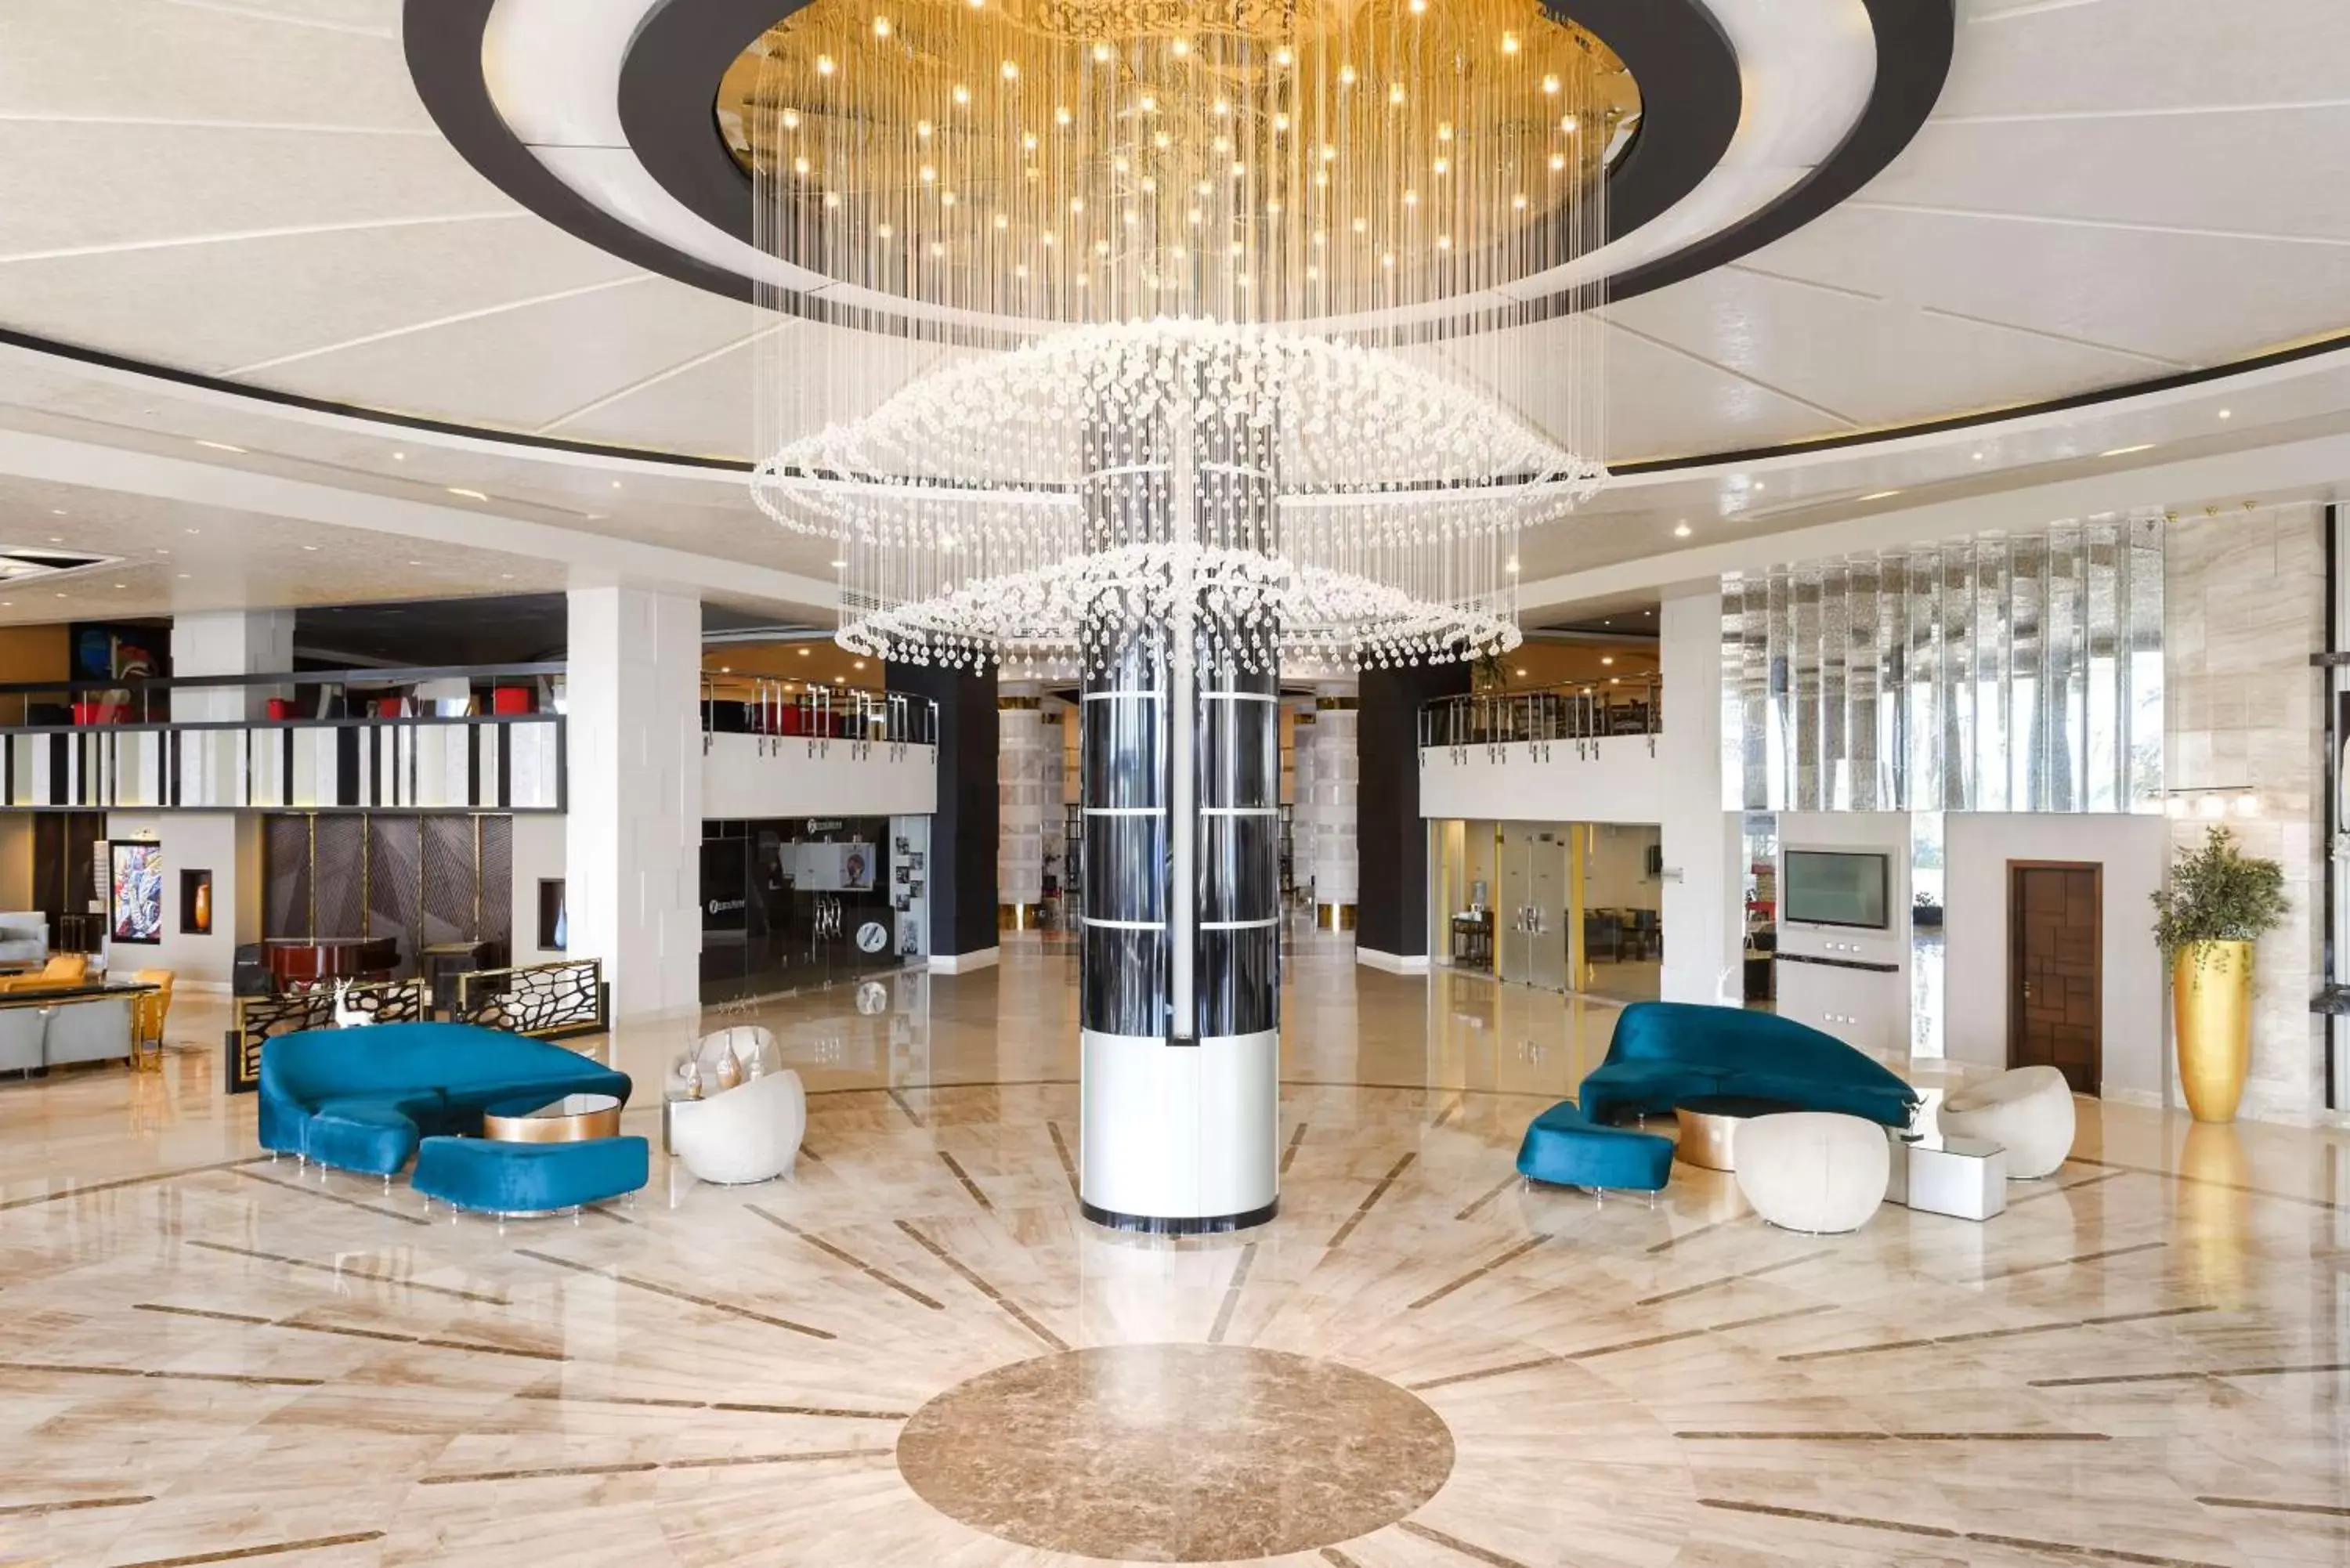 Lobby or reception, Lobby/Reception in Radisson Blu Hotel Alexandria